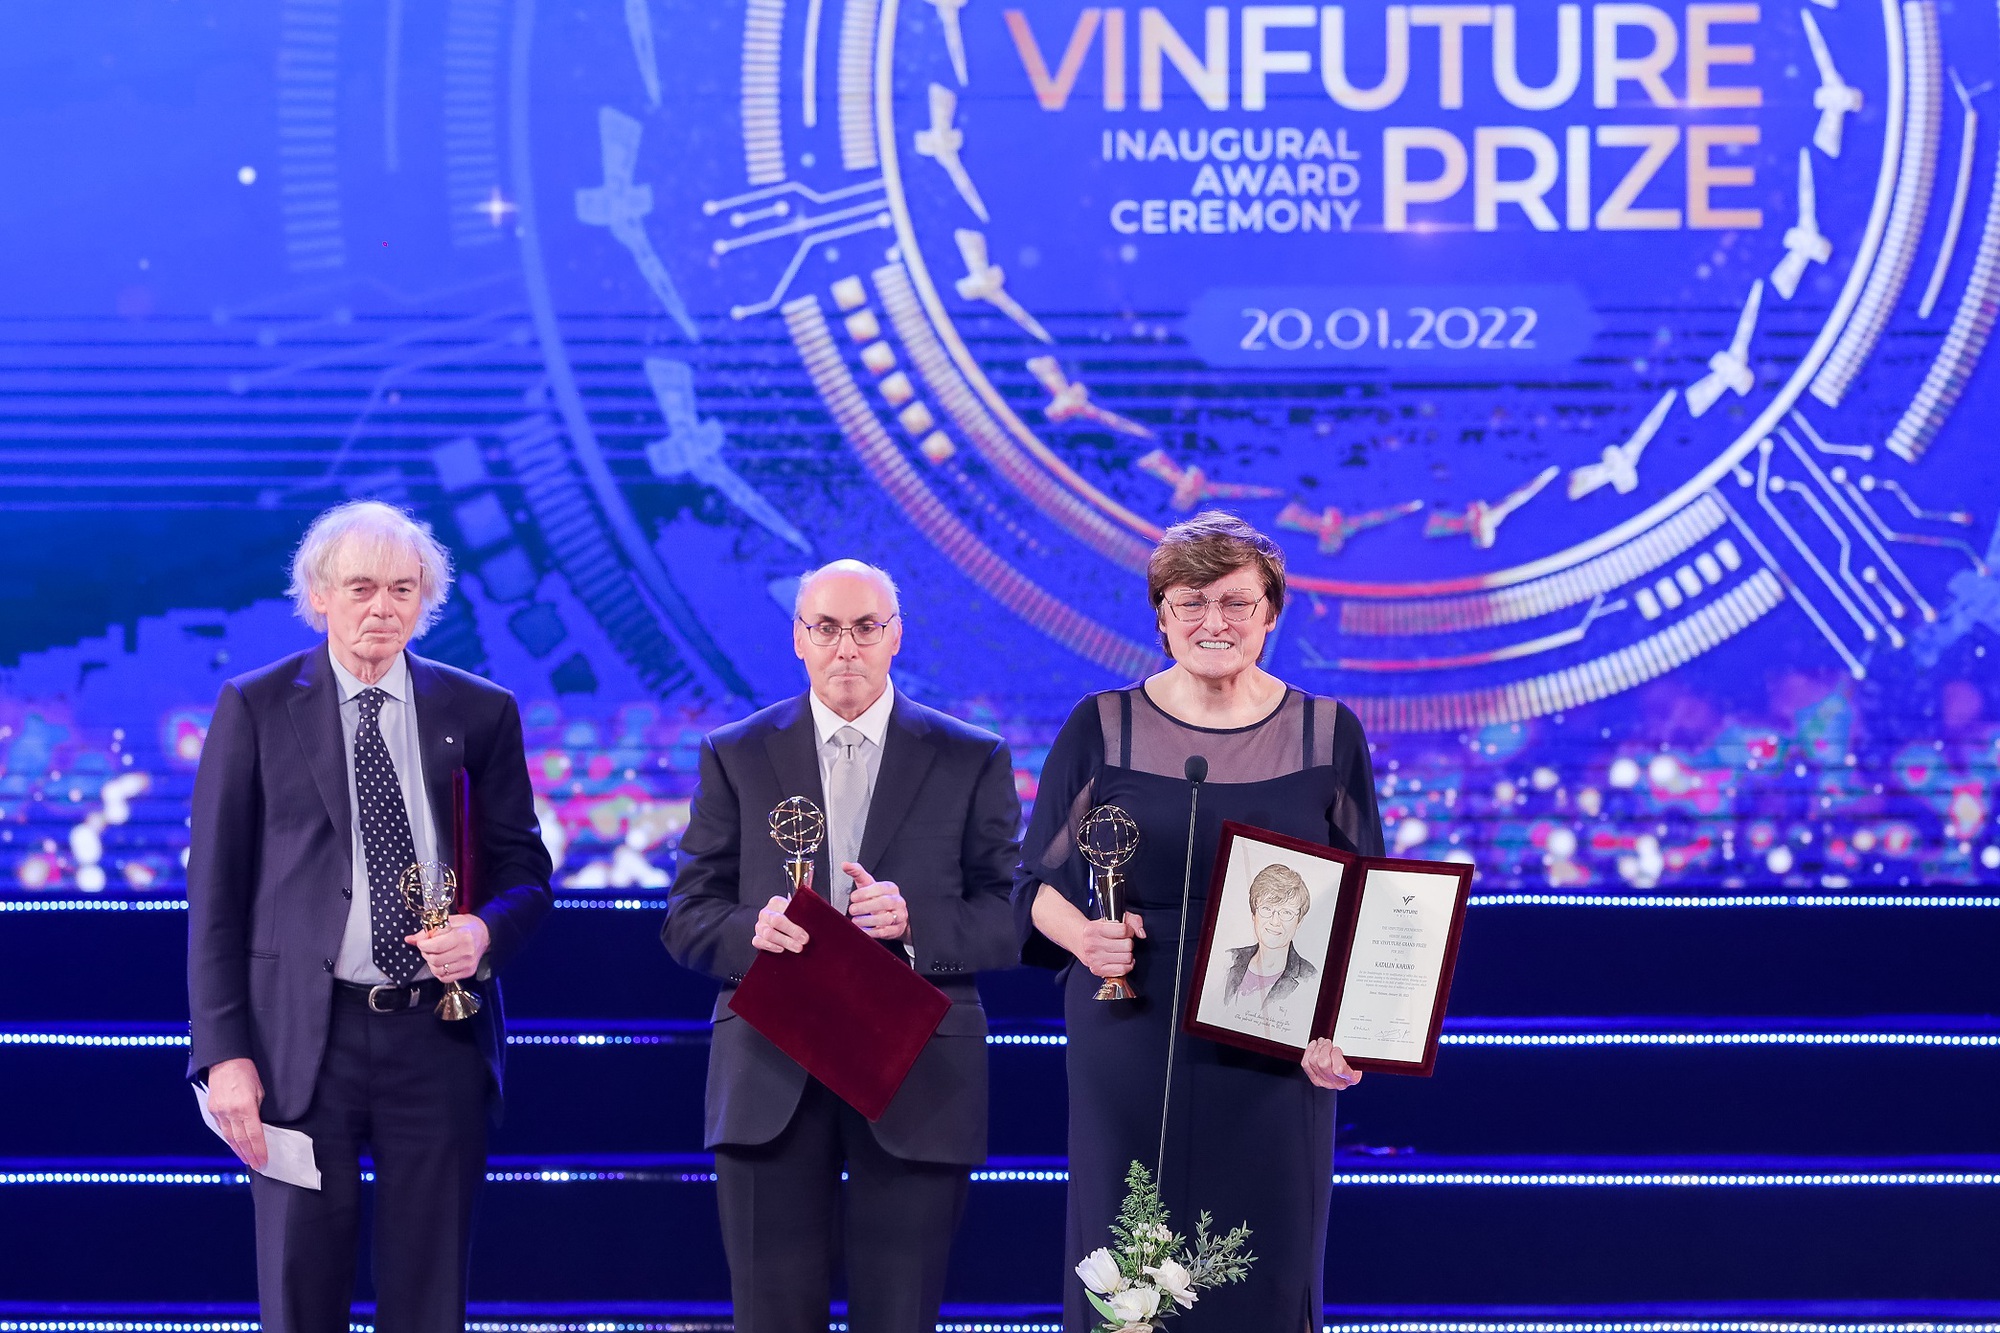 GS. Katalin Kariko và TS. Drew Weissman nhận Giải thưởng chính VinFuture mùa đầu tiên, tháng 1.2022 (Ảnh: VFP).